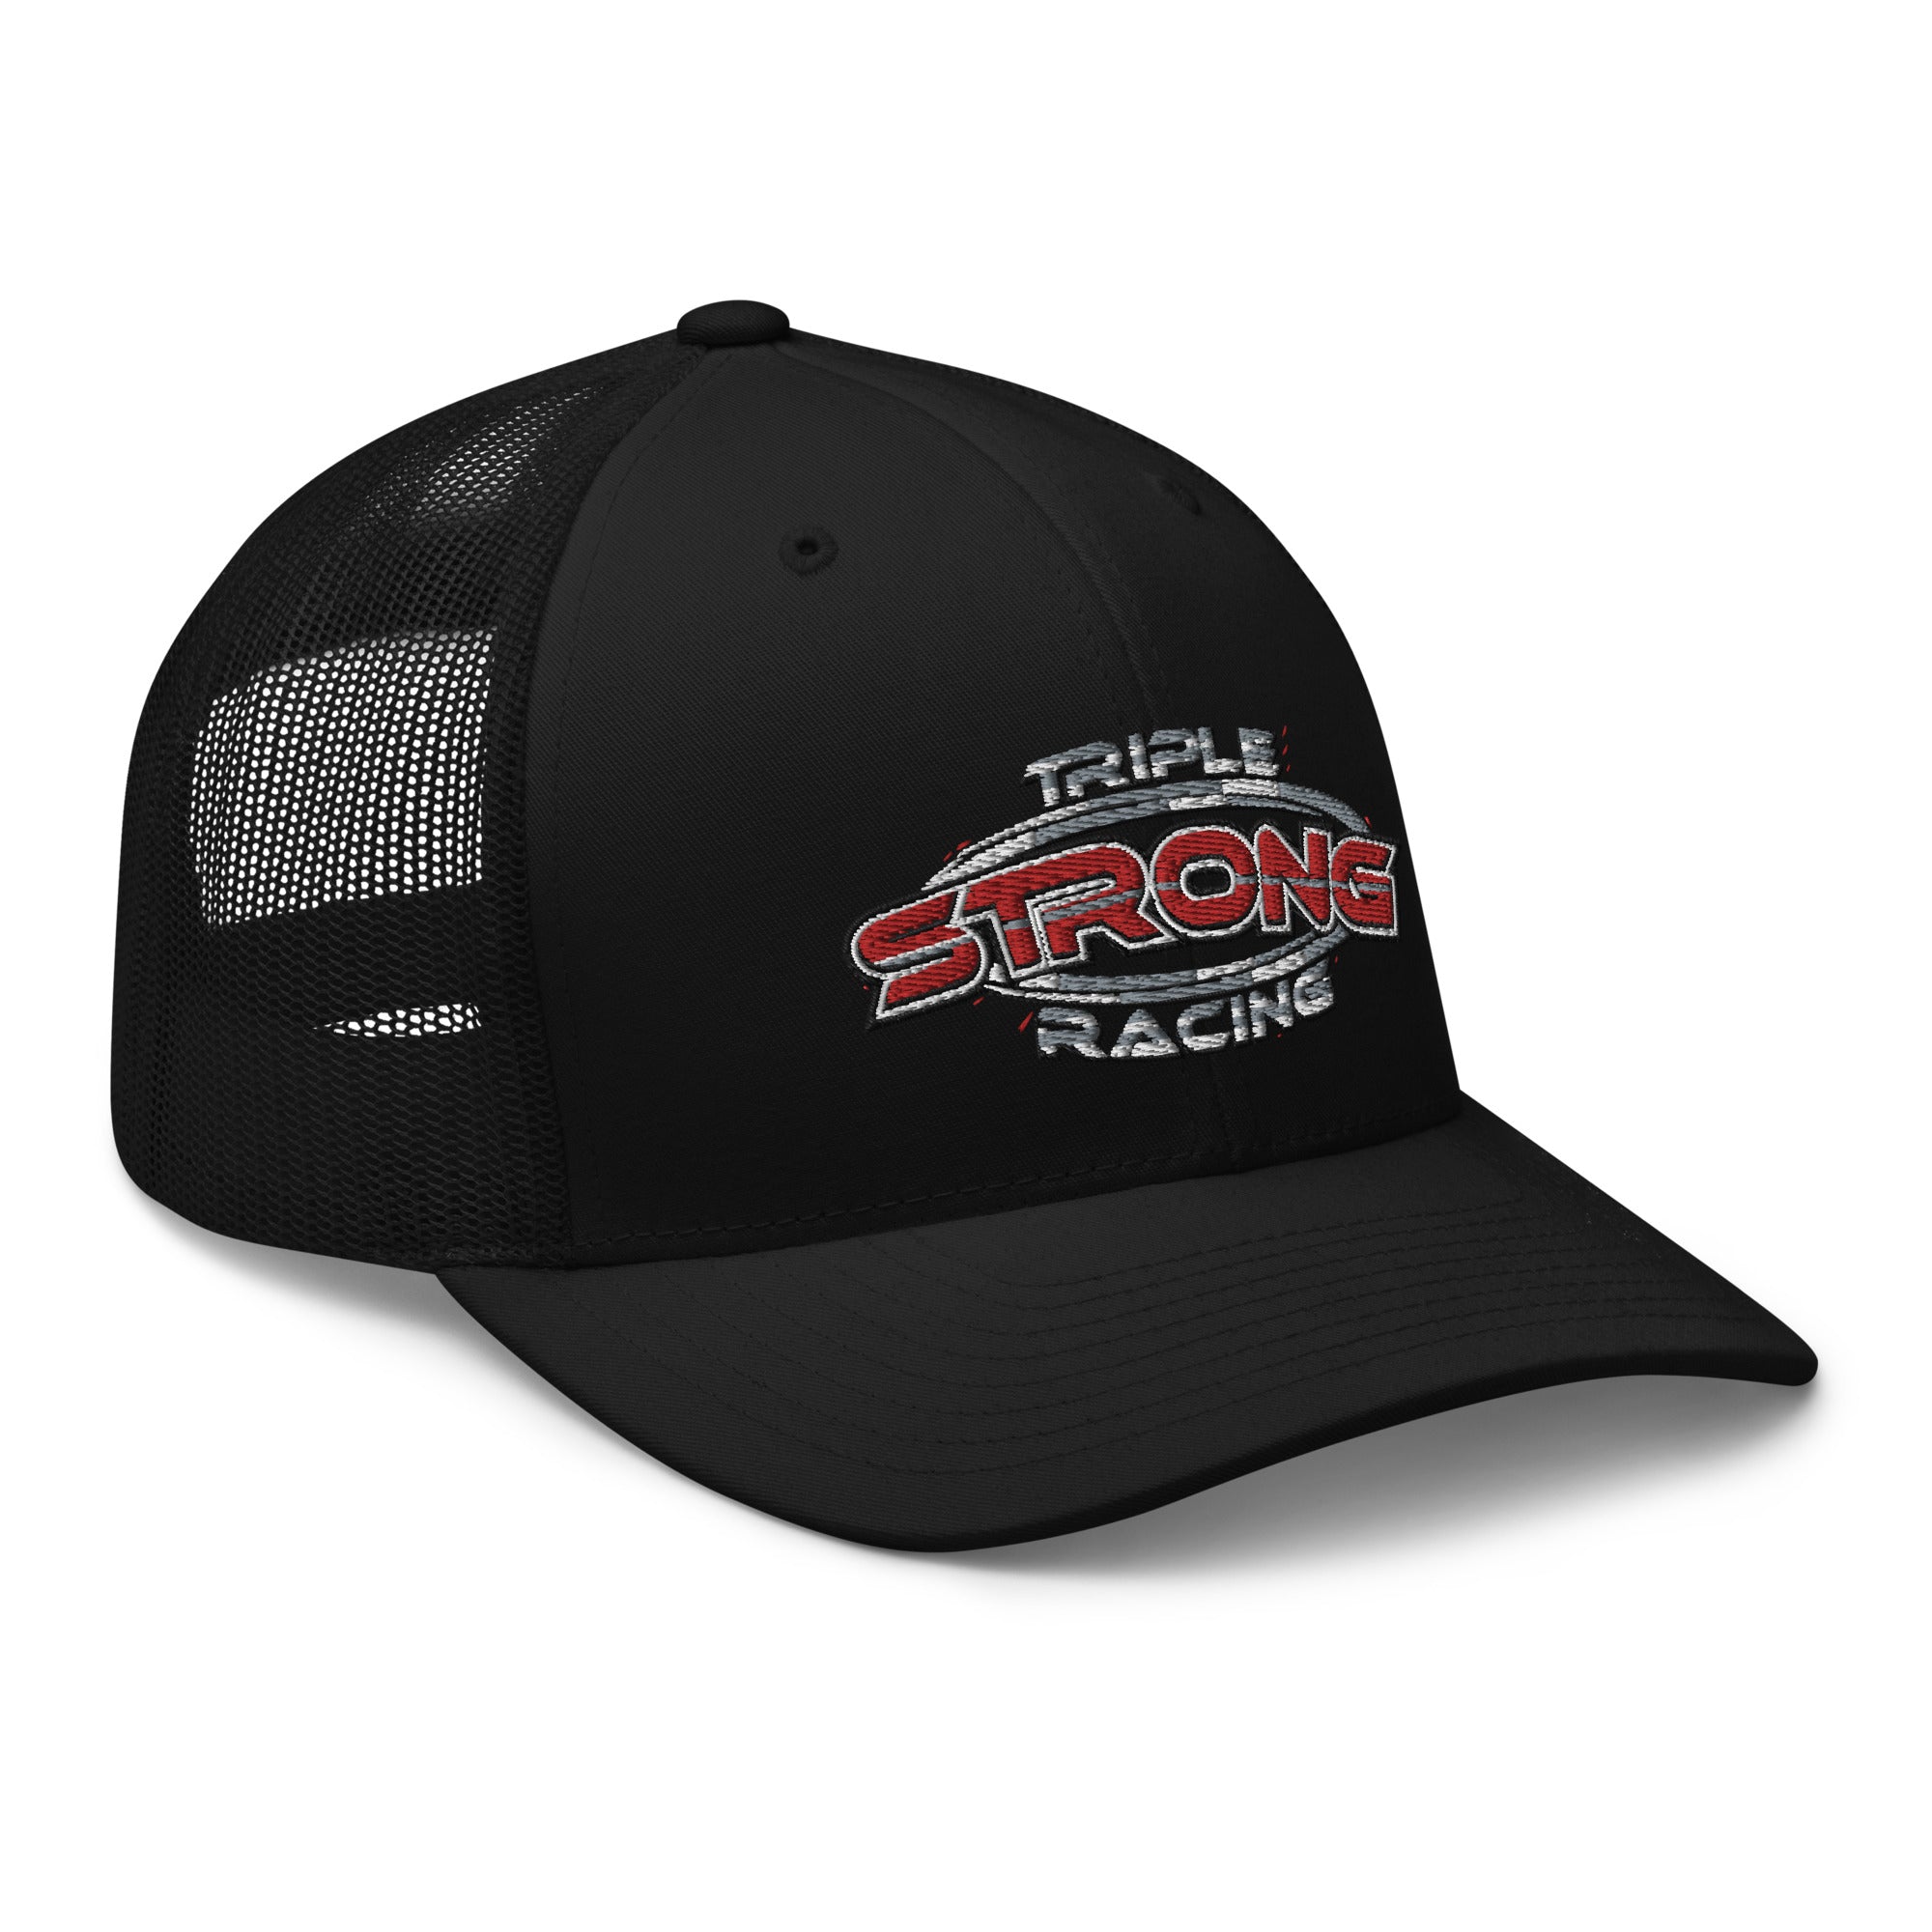 Triple Strong Racing Trucker Cap